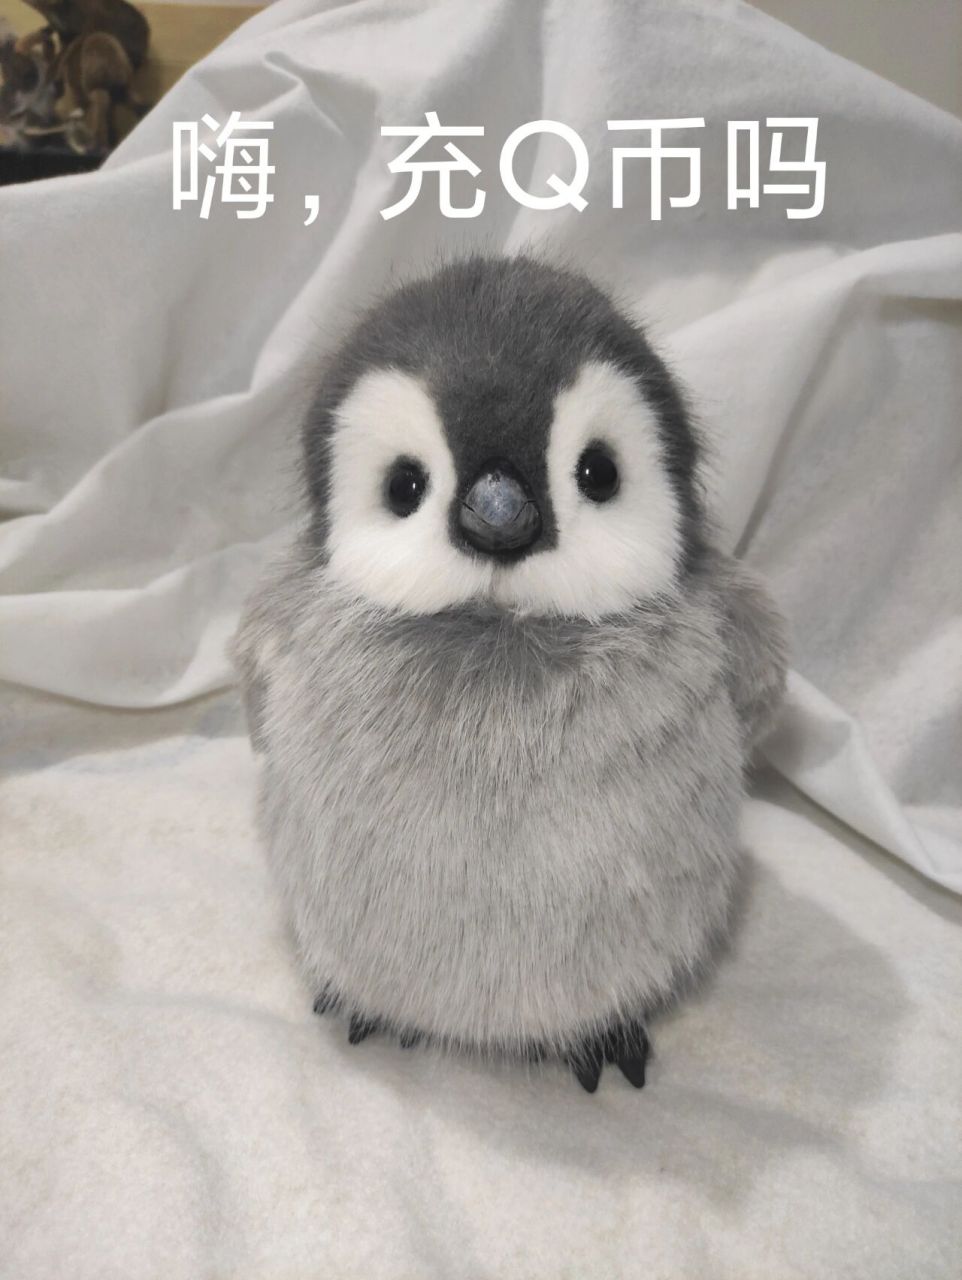 可爱的小企鹅表情包 企鹅手作,超级可爱!